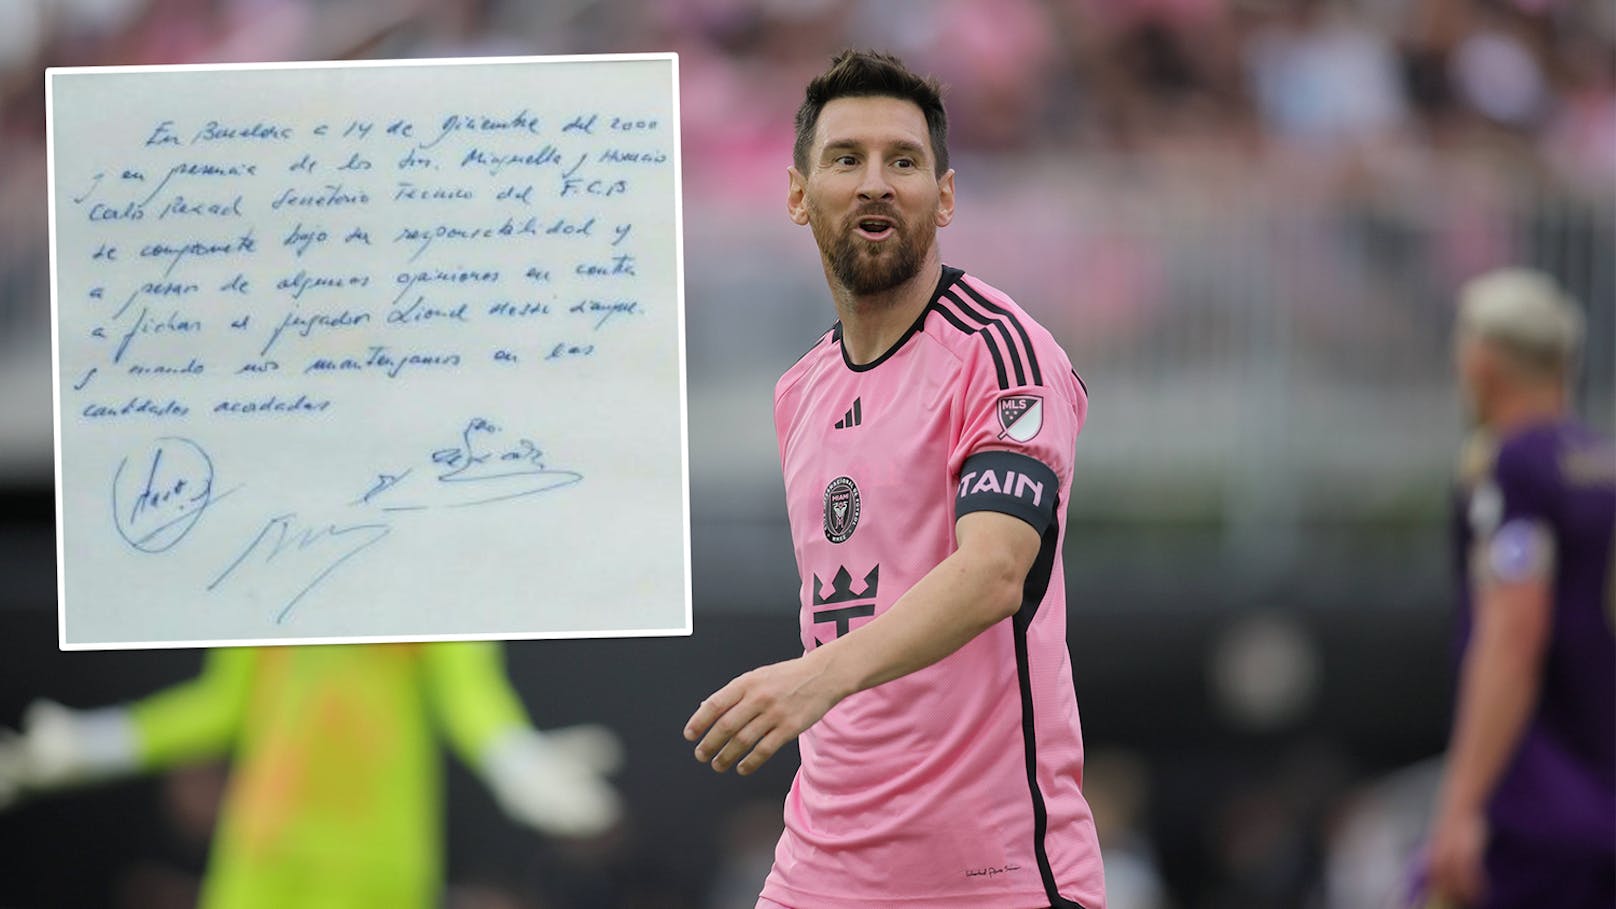 Legendärer Servietten-Vertrag von Messi wird verkauft